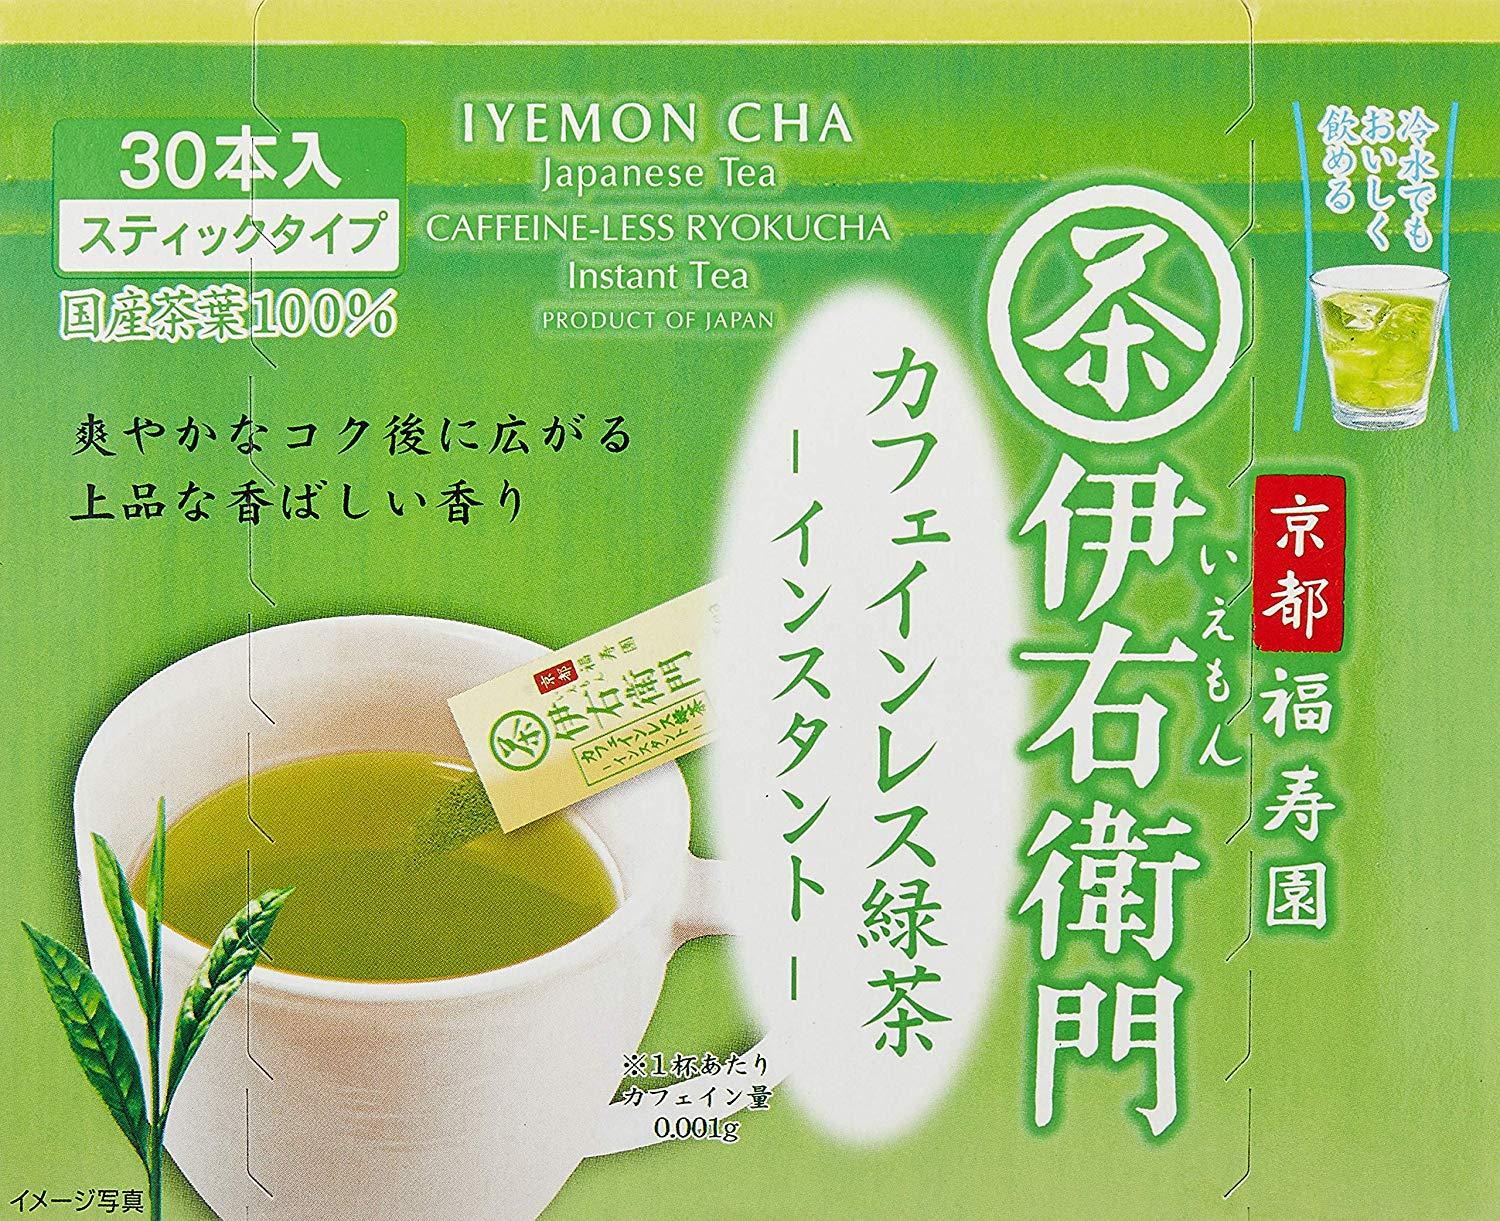  宇治の露製茶 伊右衛門 カフェインレスインスタント緑茶スティック 0.8g 1箱(30本)